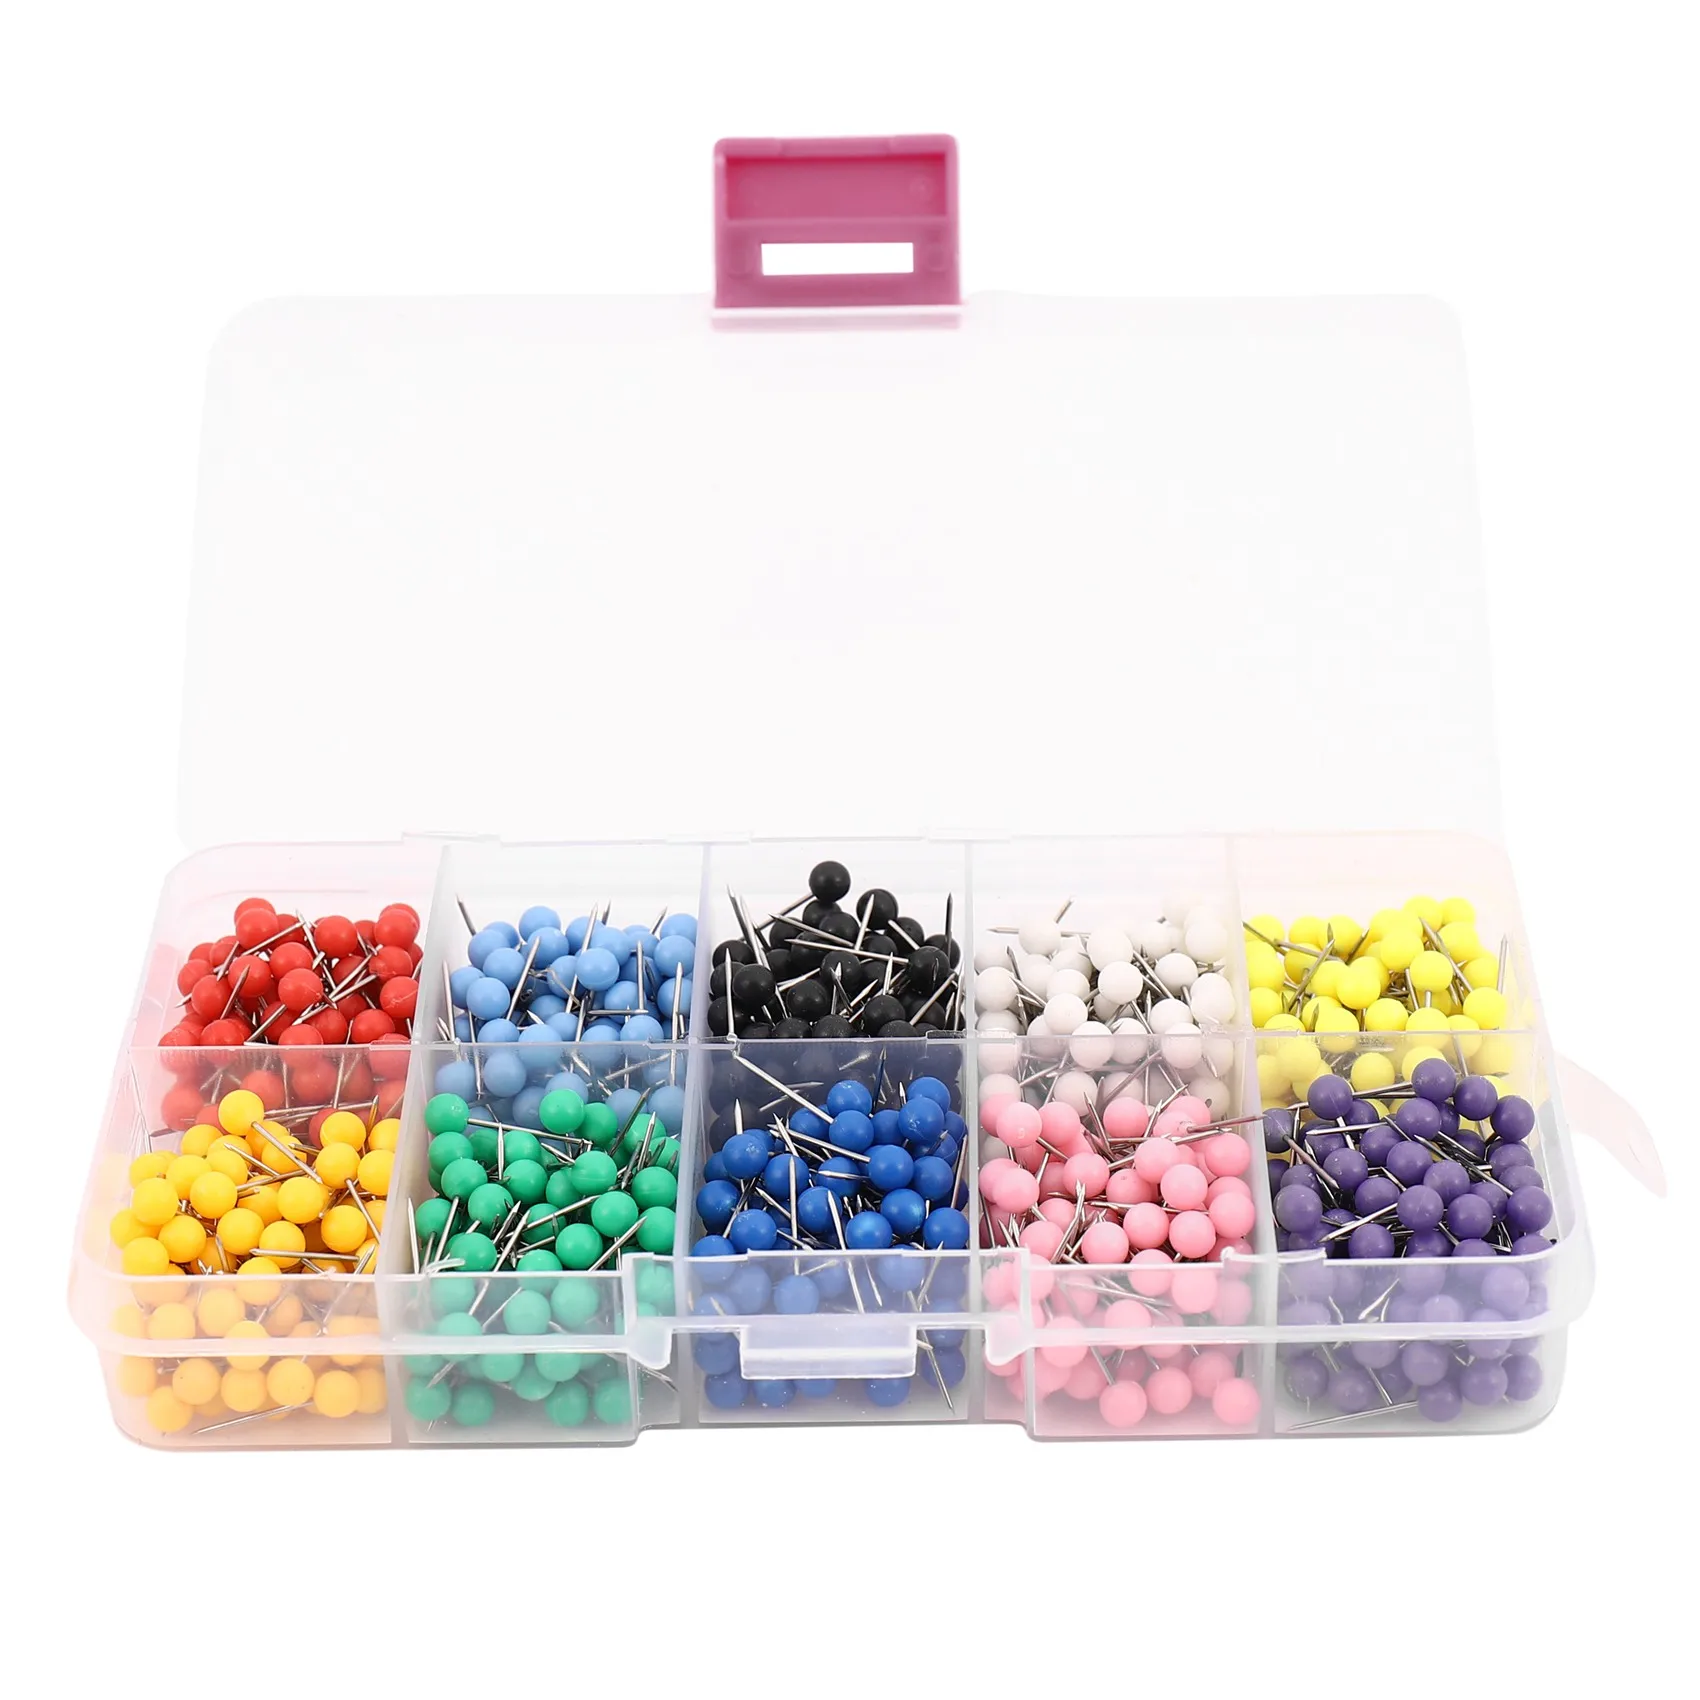 1000 штук 1/8-дюймовых картографических кнопок с пластиковыми круглыми головками и стальными наконечниками для игл 10 цветов (каждого цвета по 100 шт.)